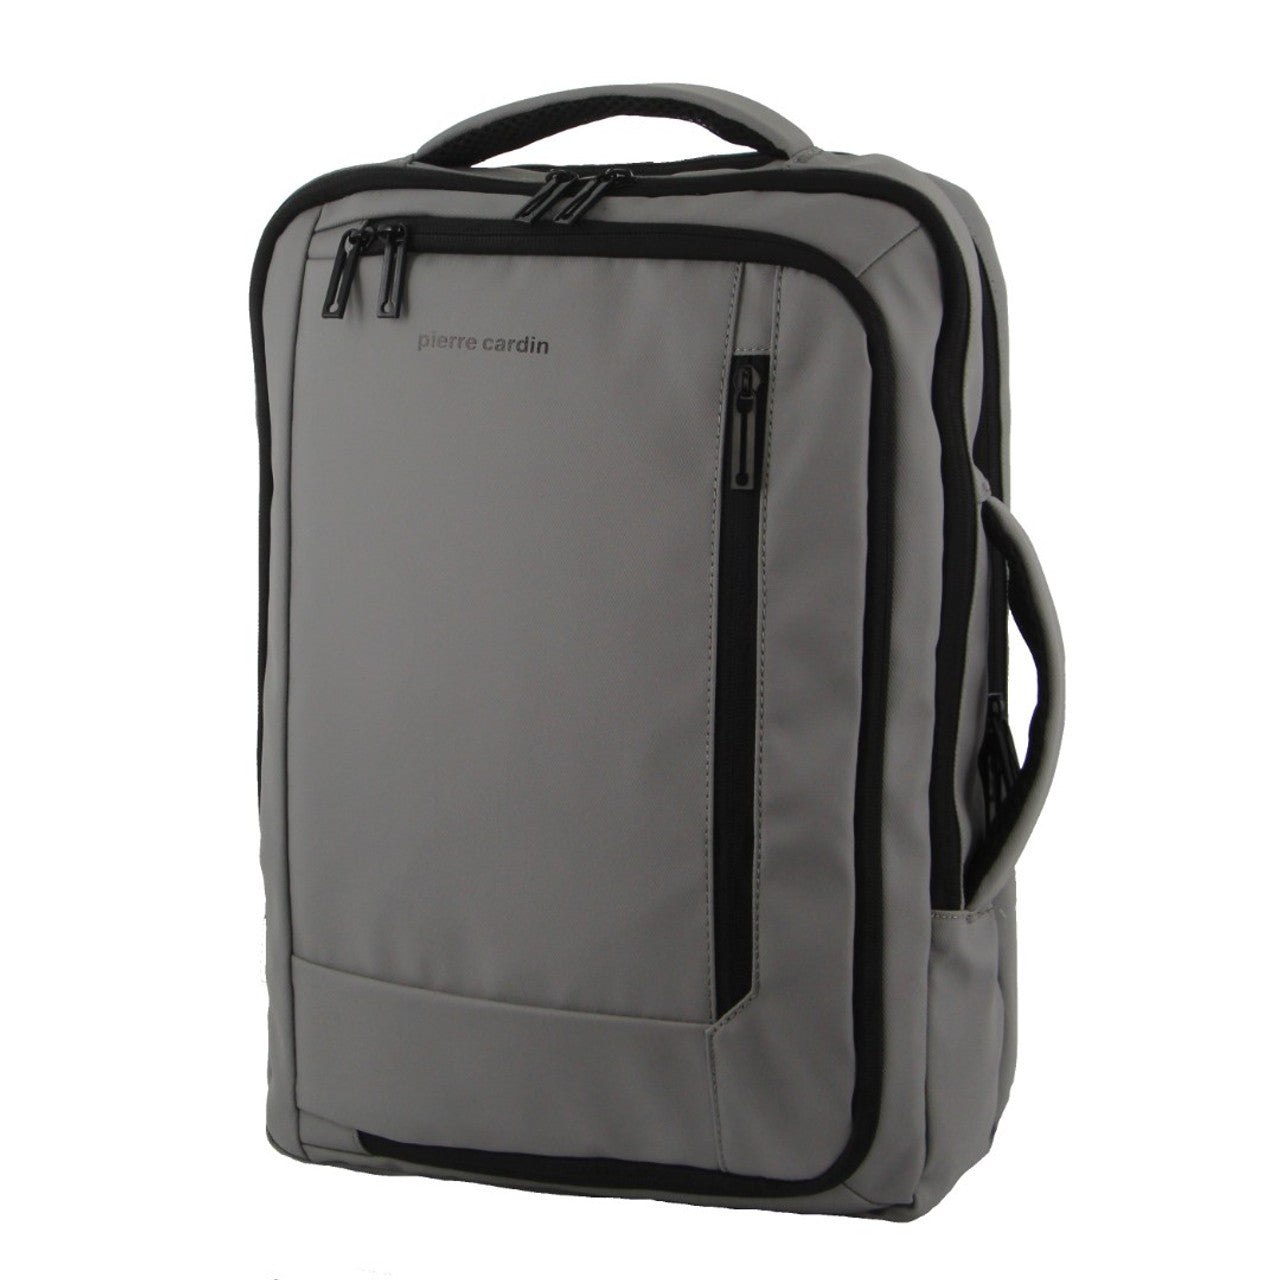 Pierre Cardin - PC3623 Top & Side handle 15in Laptop backpack w USB port - Black